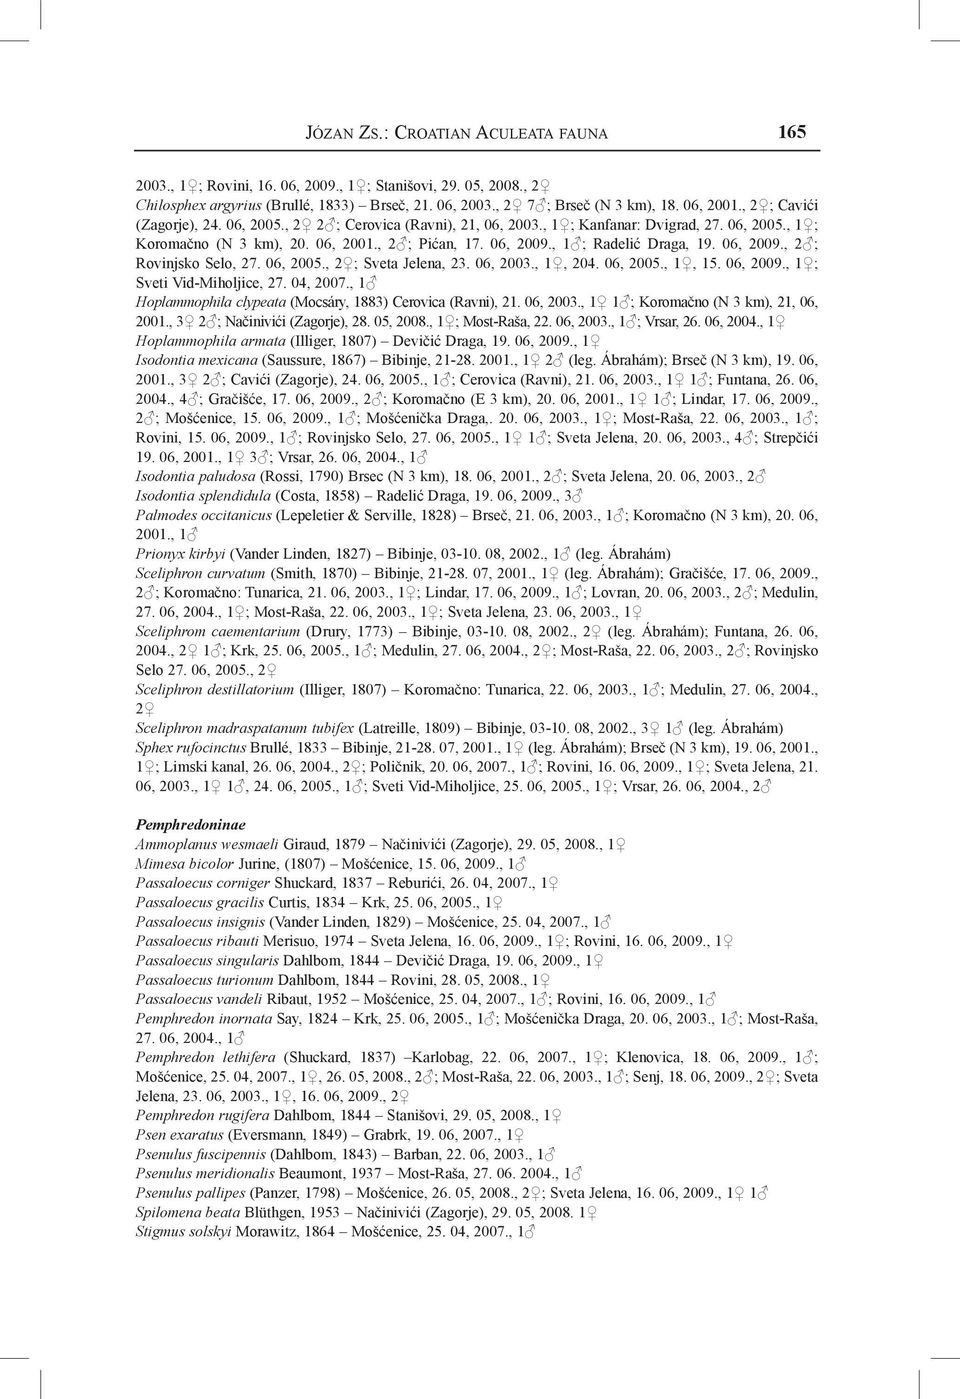 , 1 ; Radelić Draga, 19. 06, 2009., 2 ; Rovinjsko Selo, 27. 06, 2005., 2 ; Sveta Jelena, 23. 06, 2003., 1, 204. 06, 2005., 1, 15. 06, 2009., 1 ; Sveti Vid-Miholjice, 27. 04, 2007.